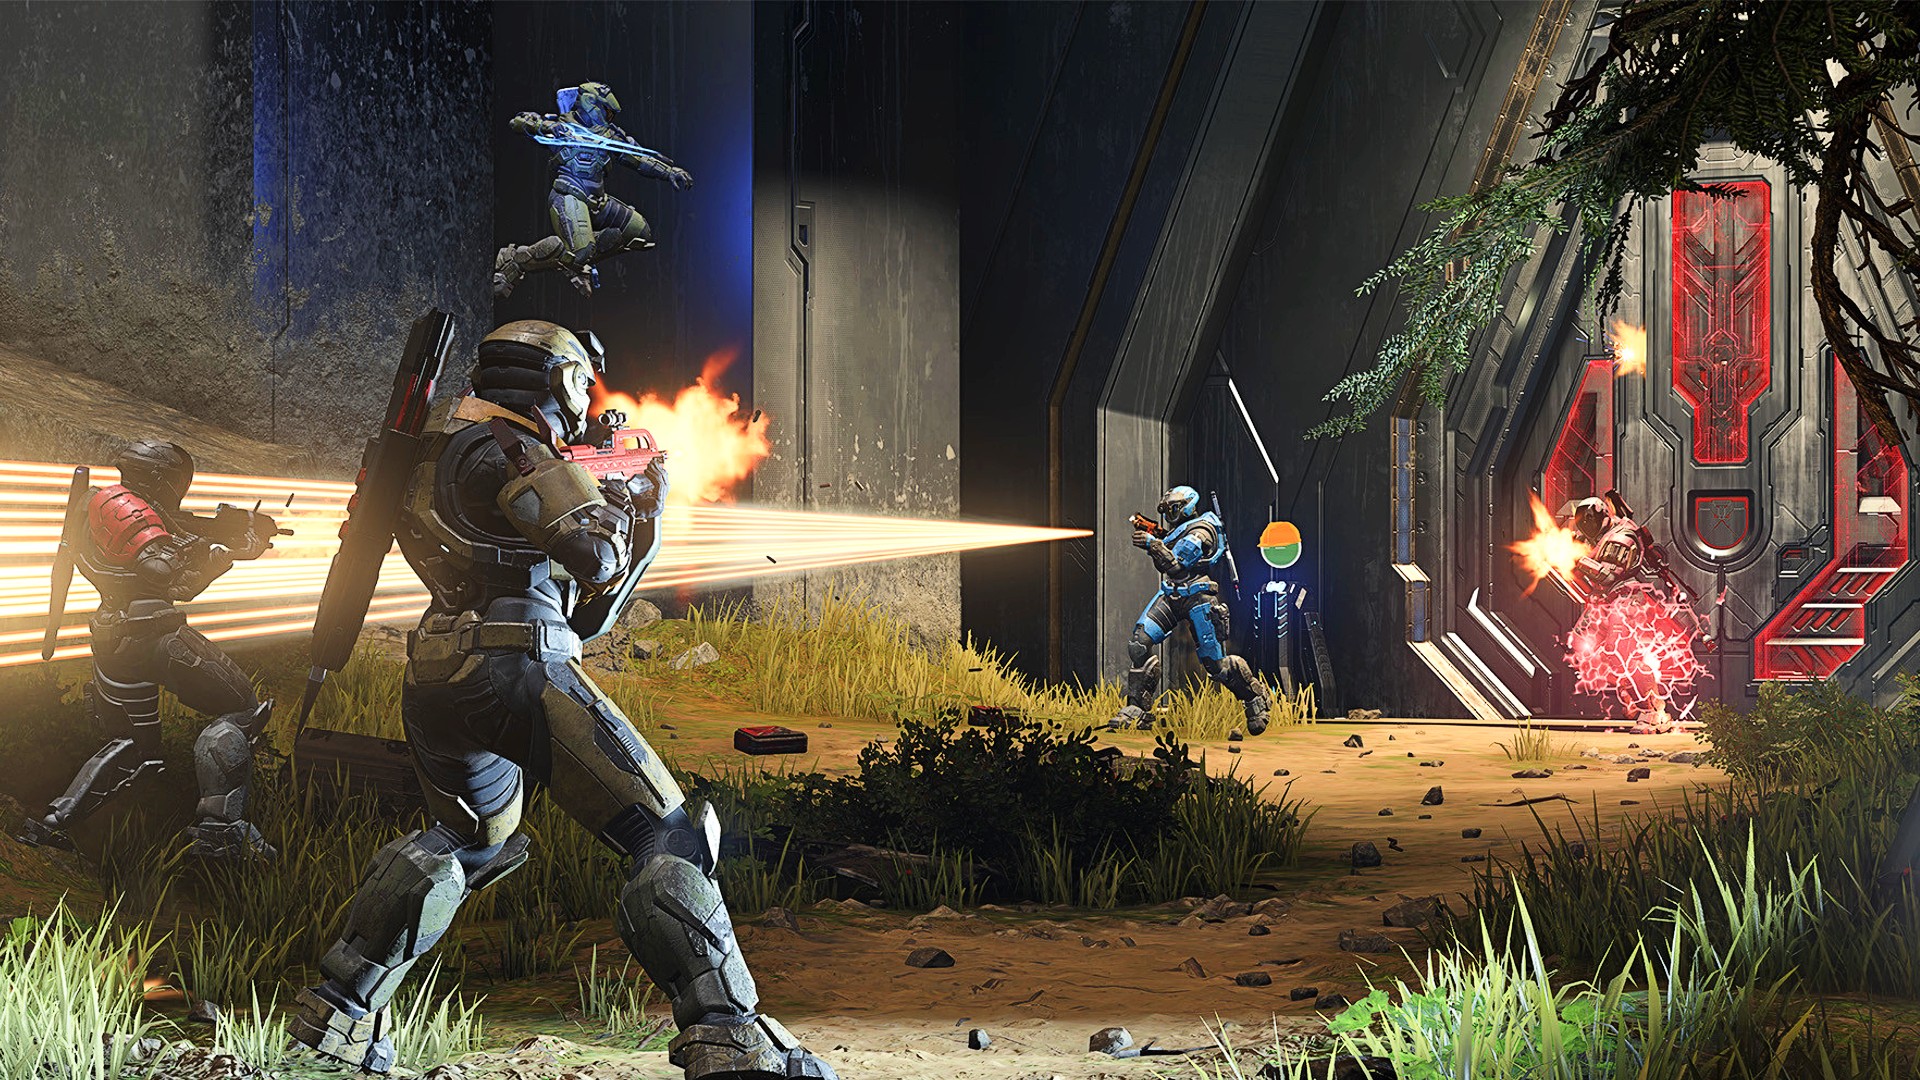 Halo Infinite: agora disponível com o Game Pass